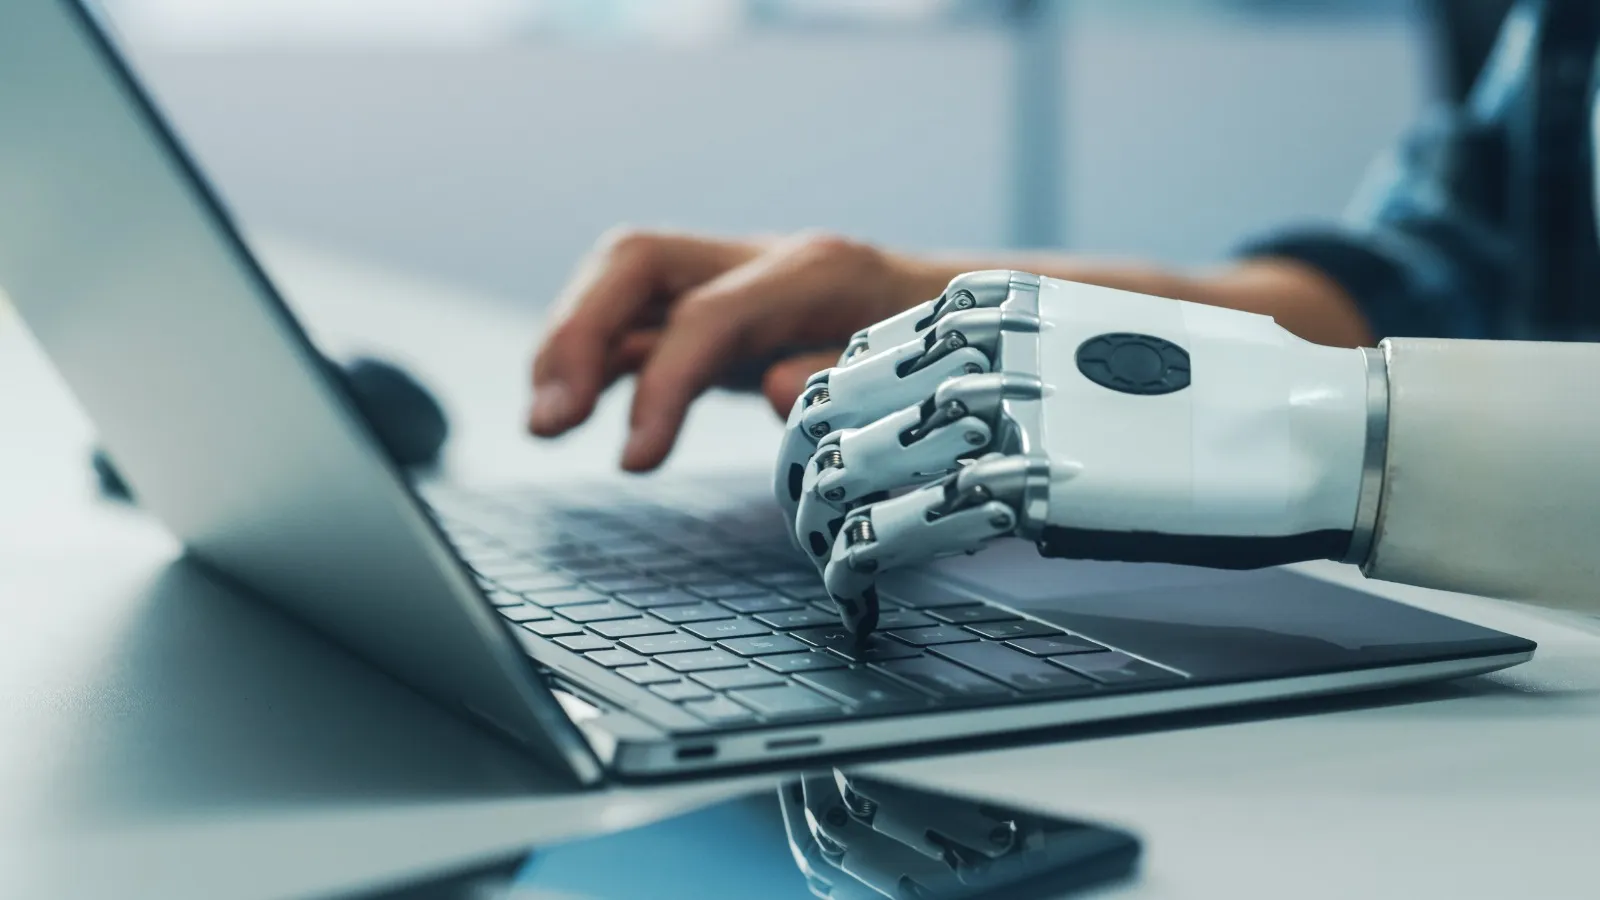 persona tecleando en un computador, una de sus manos es robótica